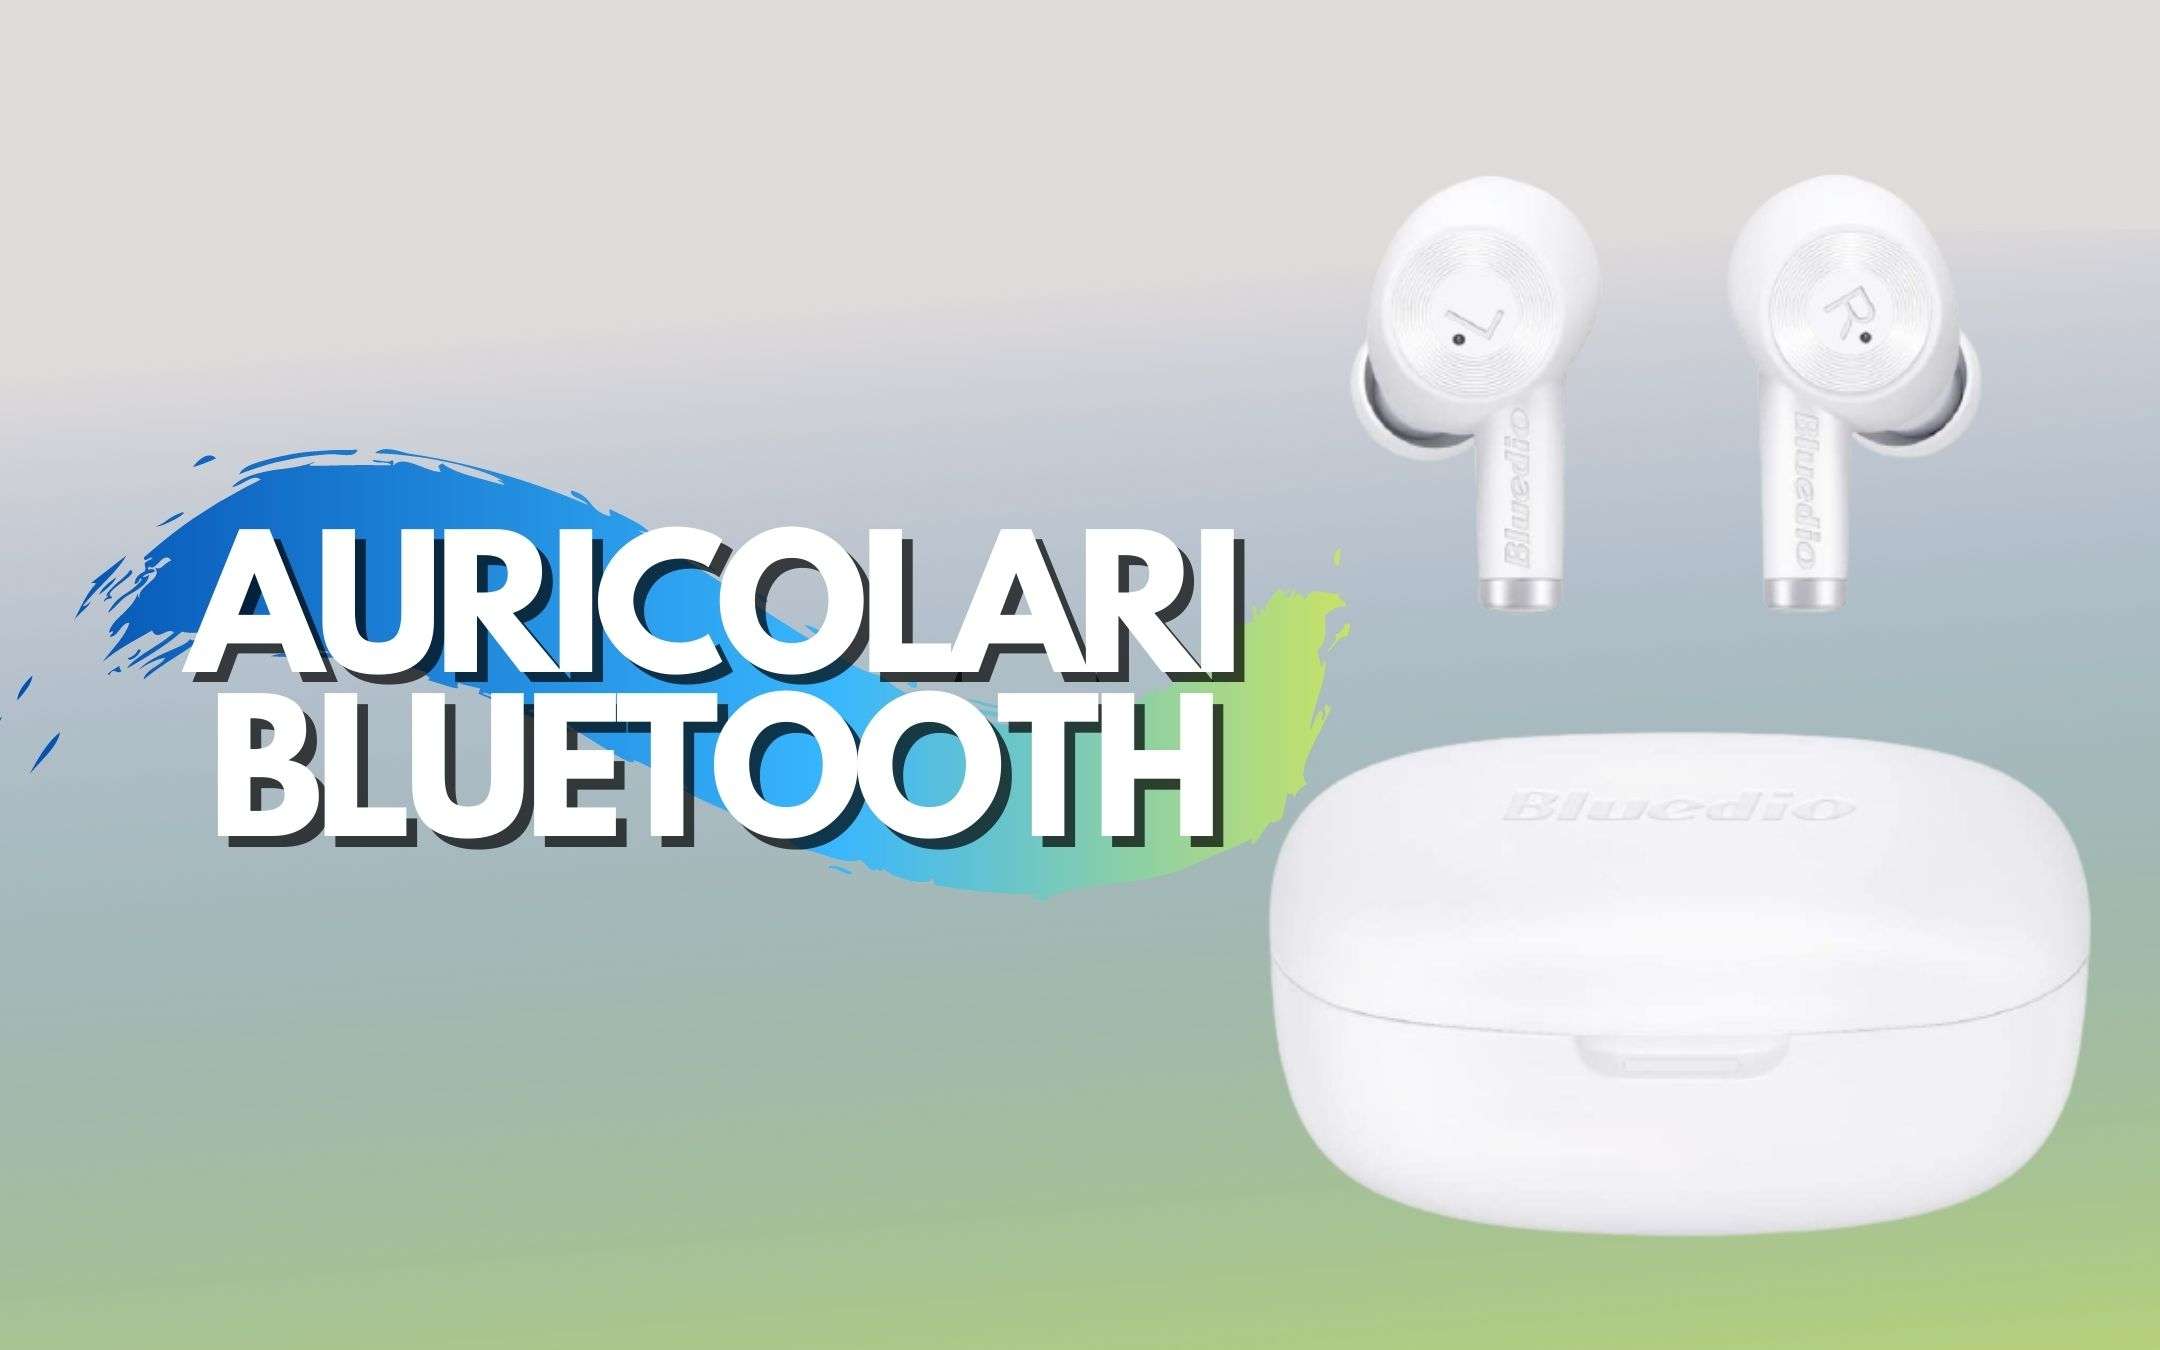 Auricolari Bluetooth più economici che mai (14€)